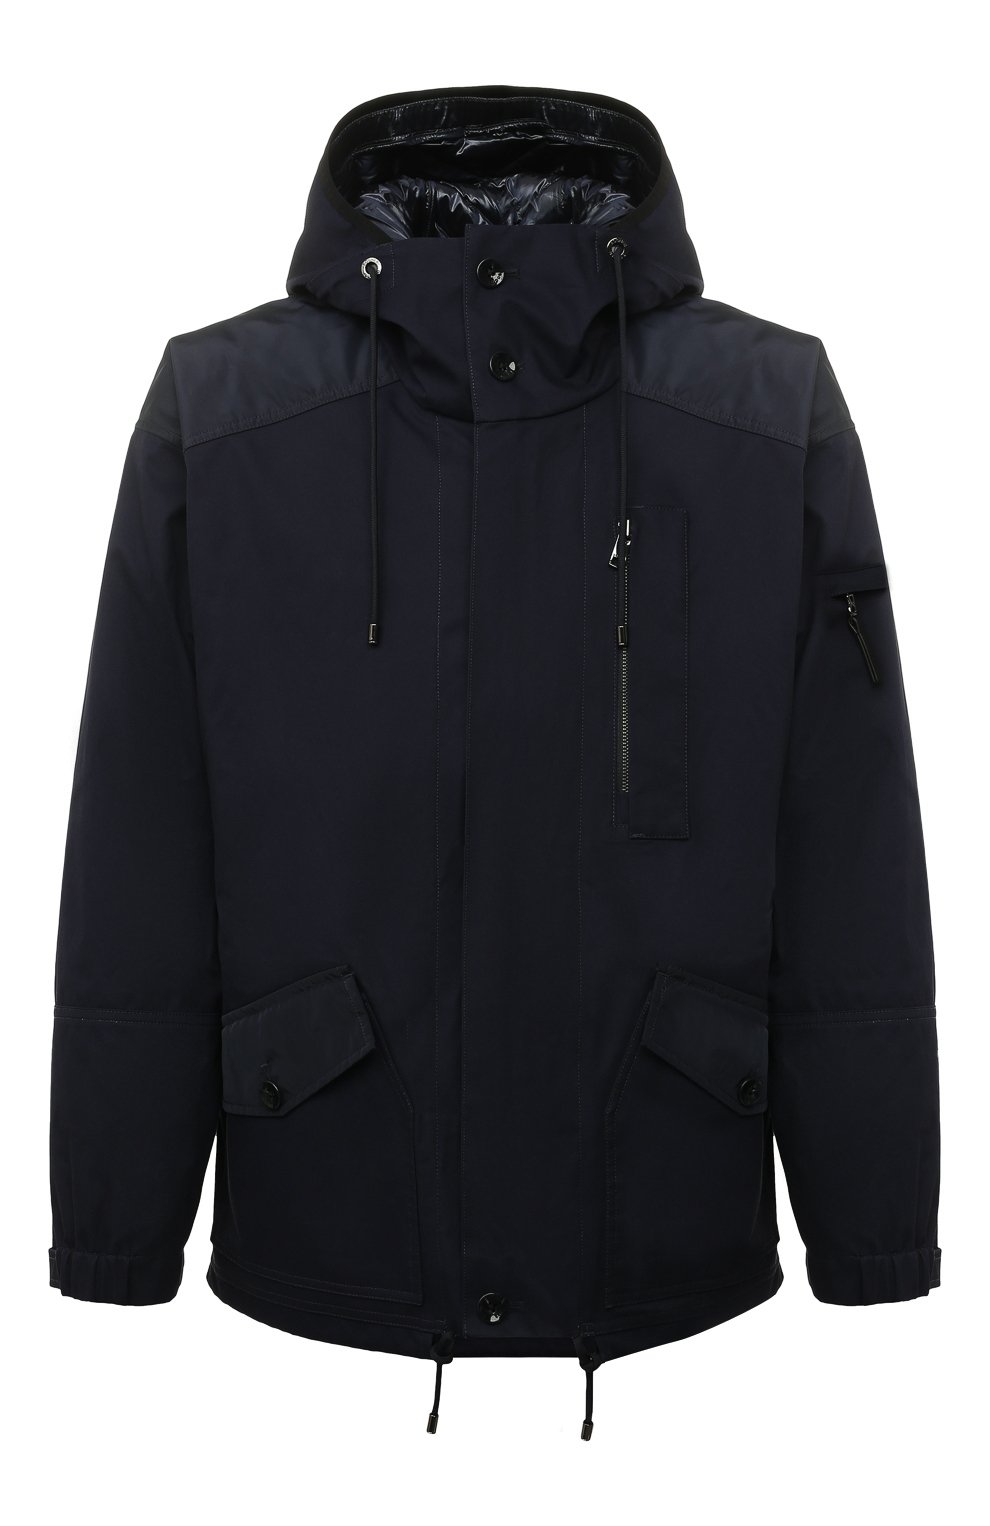 Куртки Bogner, Комплект из двух курток Bogner, Китай, Синий, Внутренняя куртка: Полиамид: 100%; Подкладка-полиамид: 100%; Наполнитель-утиный пух: 70%; Наполнитель-полиэстер: 30%; Внешняя куртка: Хлопок: 100%; Отделка-полиэстер: 100%;, 12599004  - купить